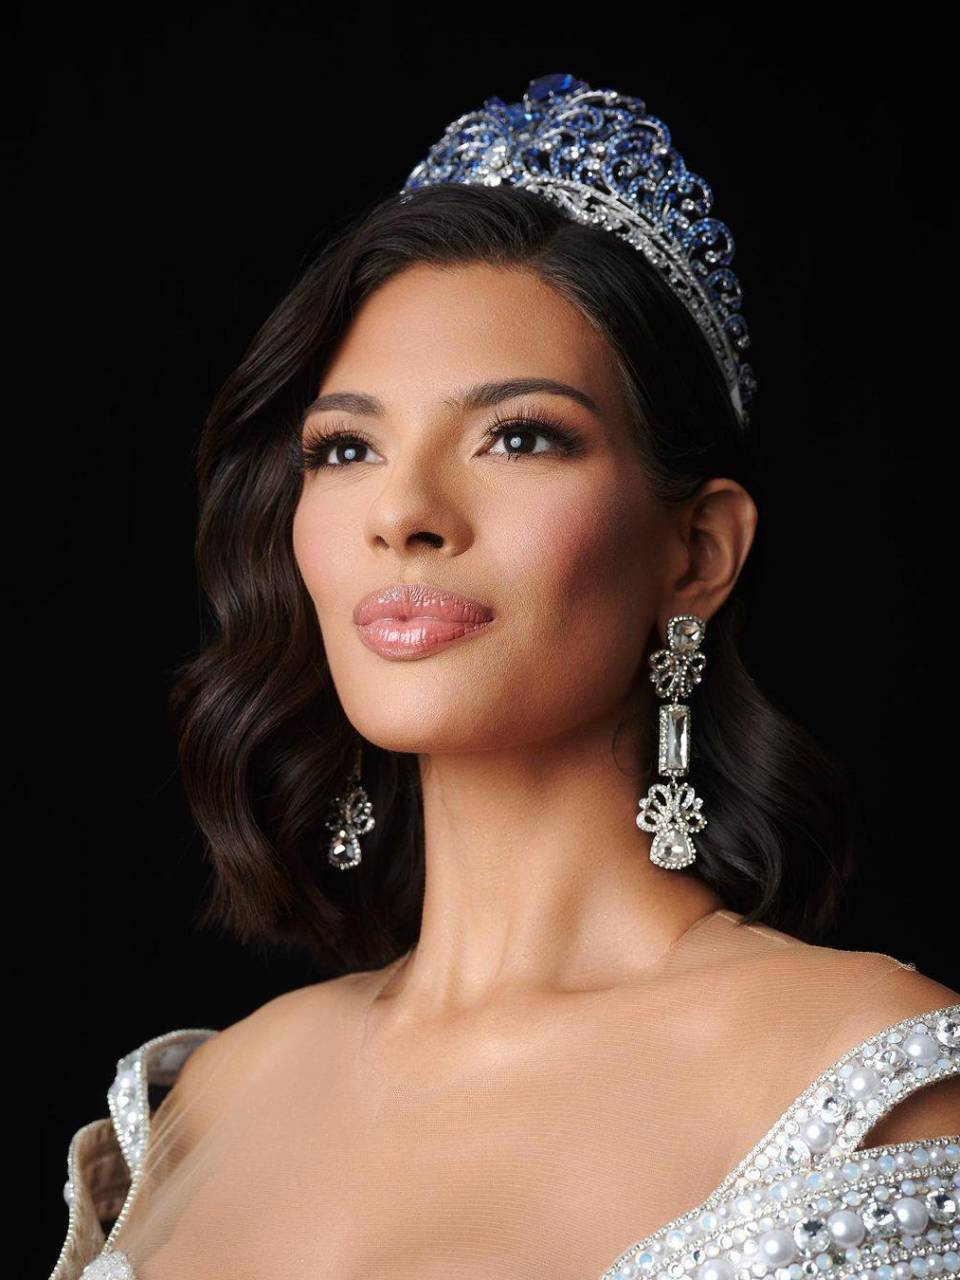 Primeras fotos oficiales como Miss Universo 2023 de Sheynnis Palacios compartidas en las redes sociales de Miss Universo.